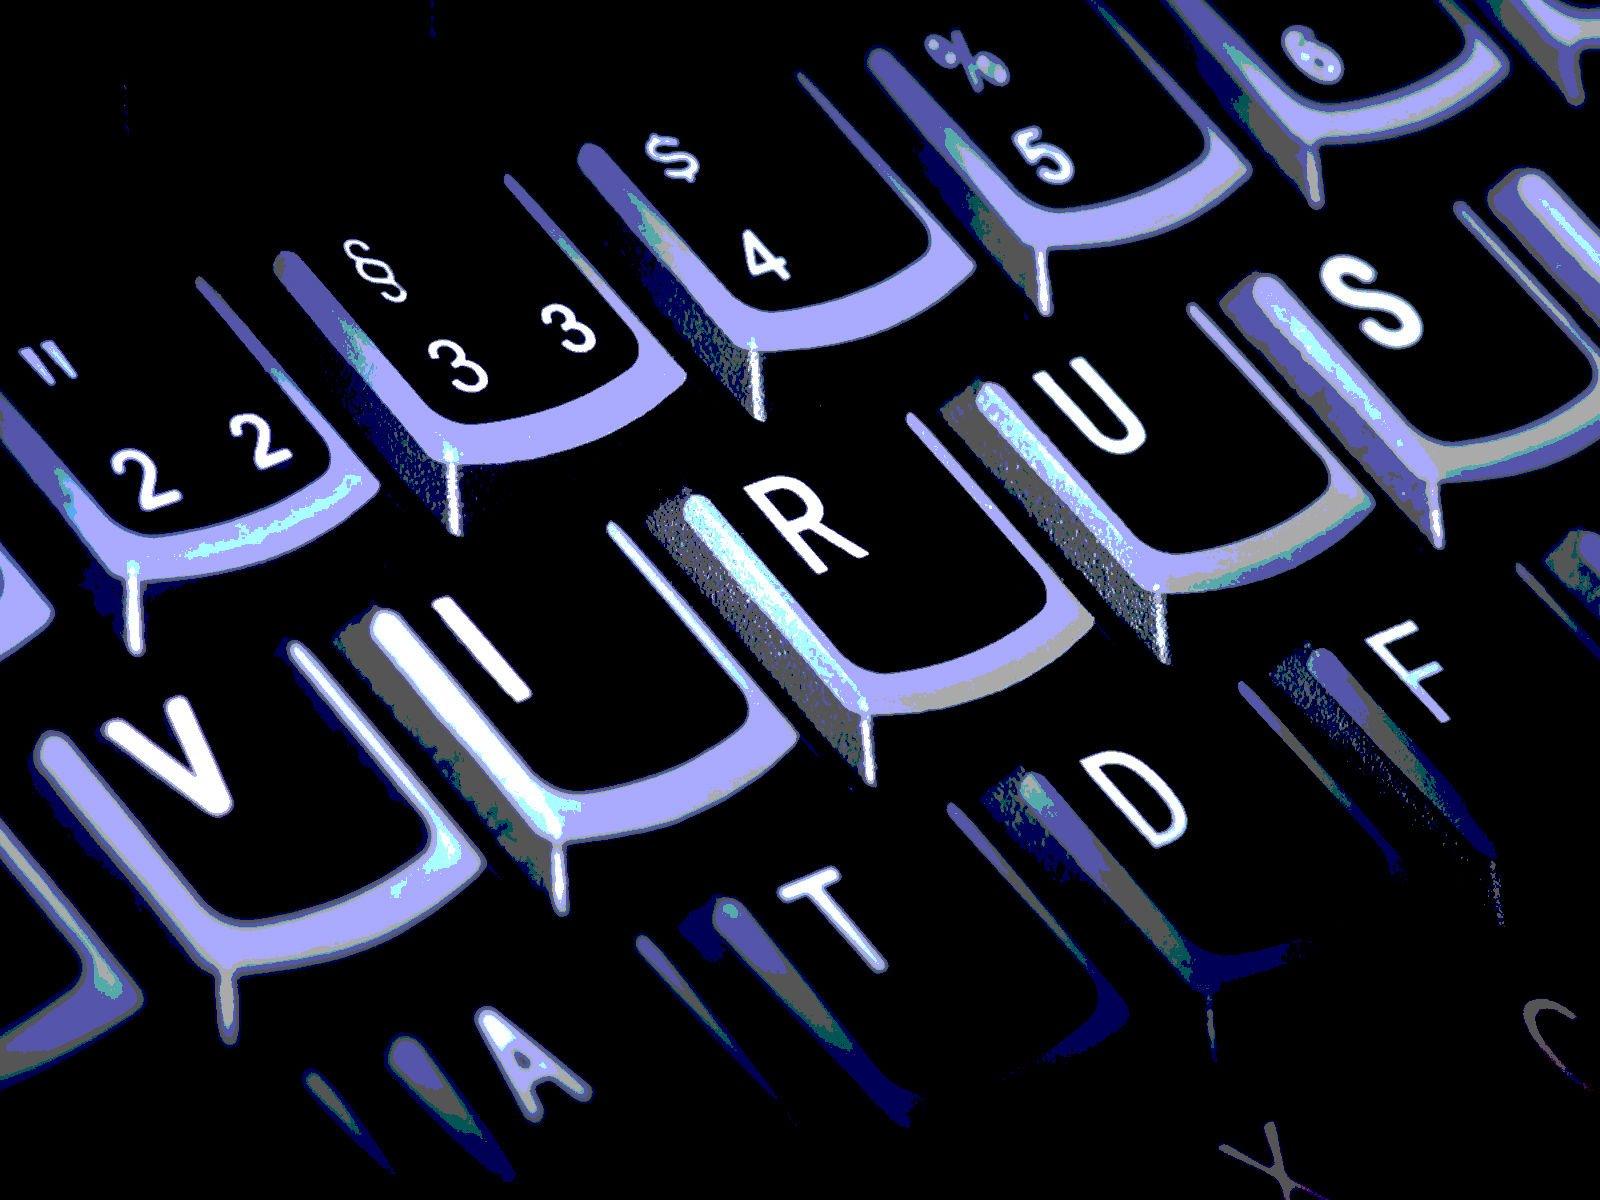 Computer virus danger hacking hacker internet sadic (33) wallpaper